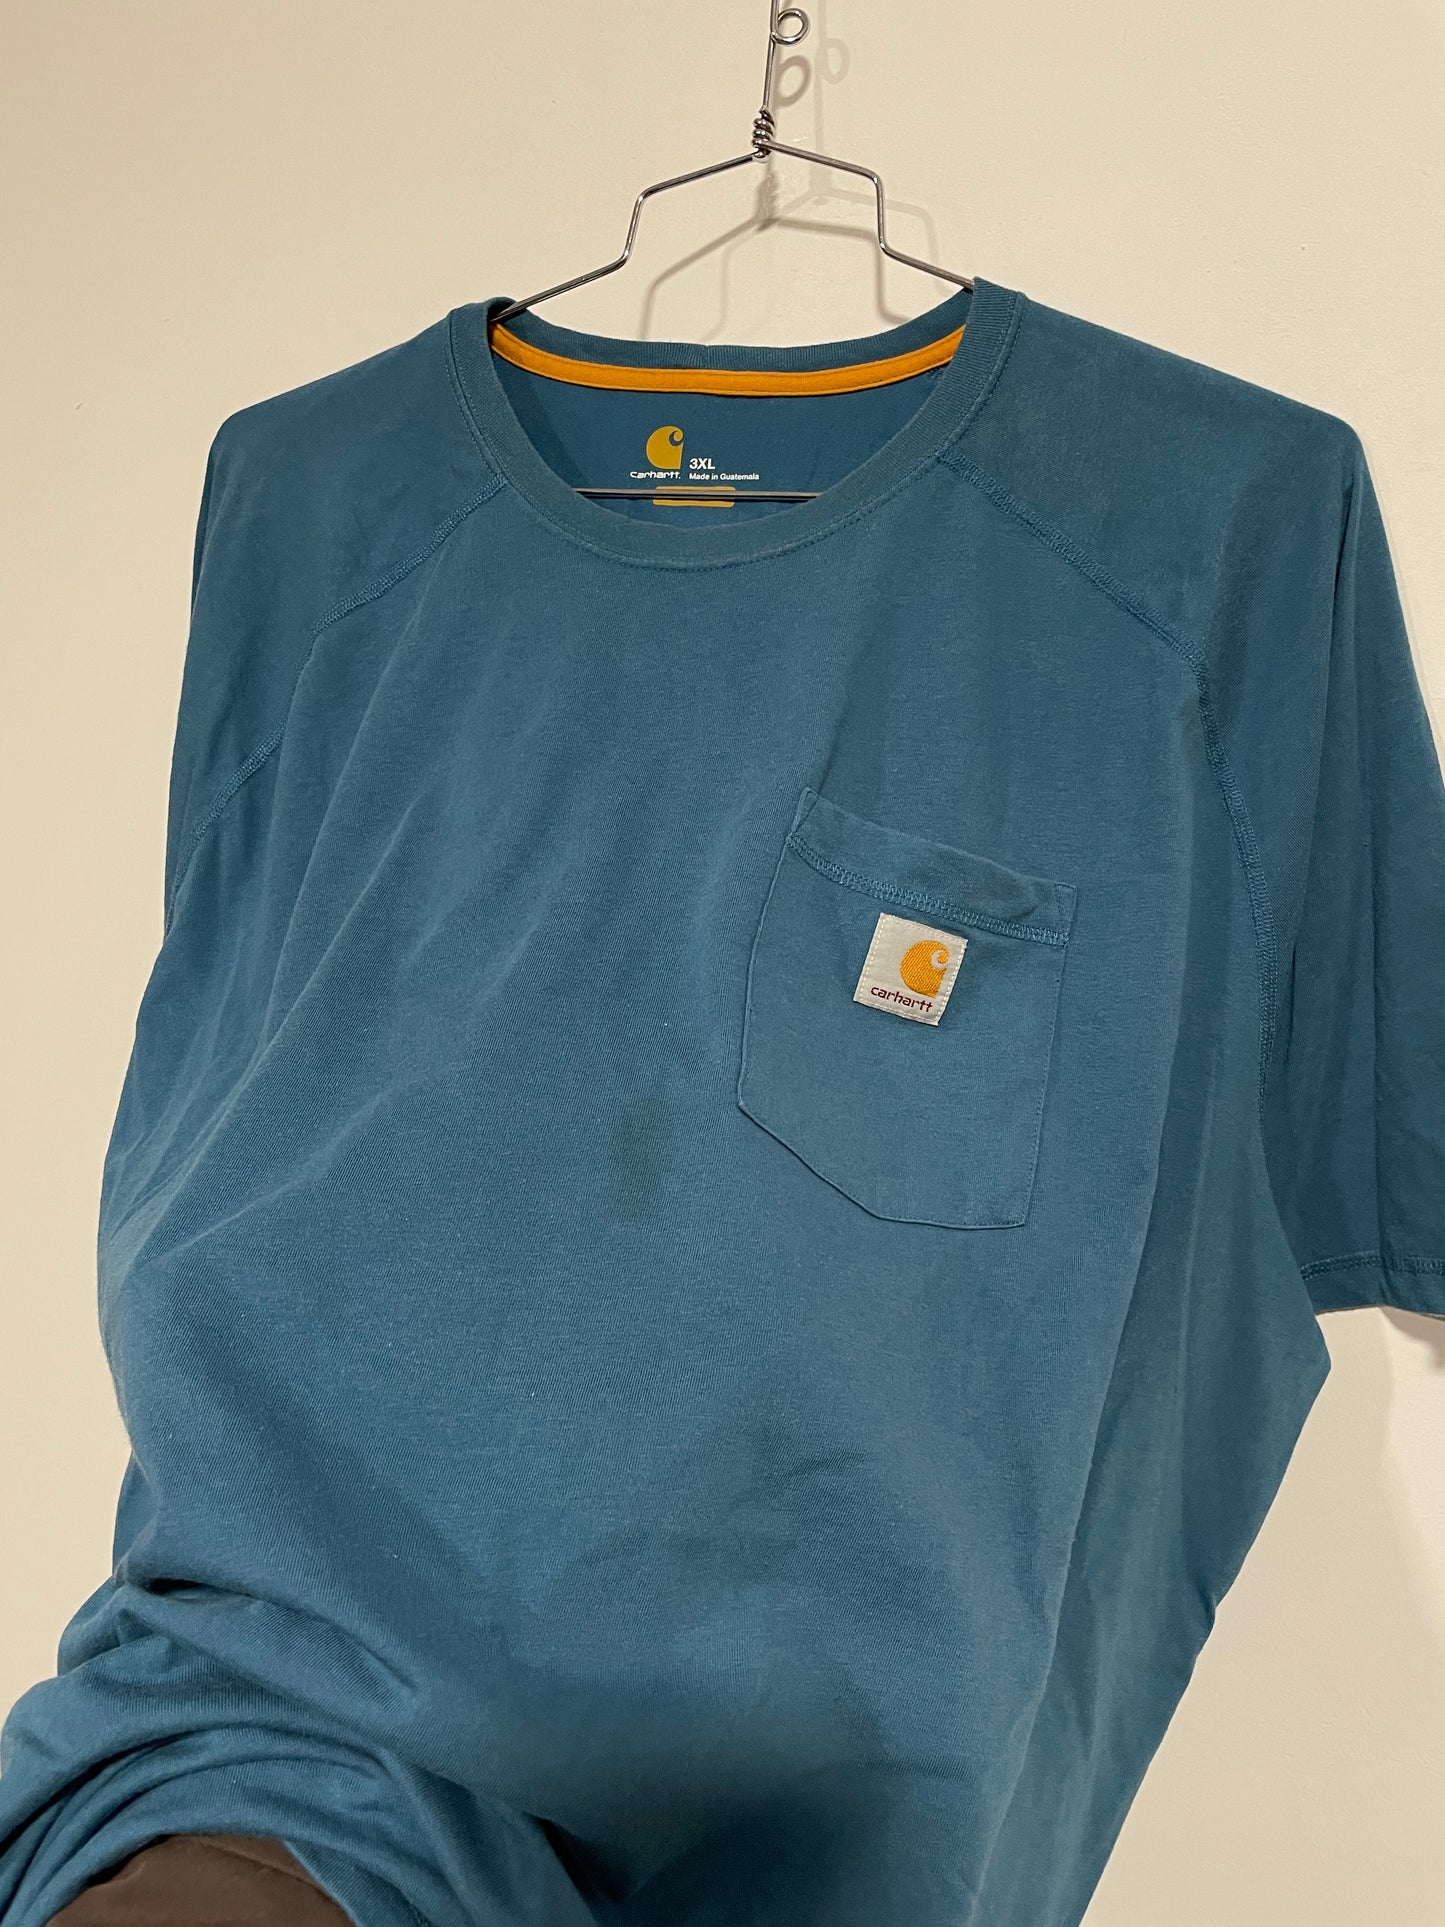 T shirt Carhartt USA (MR031)